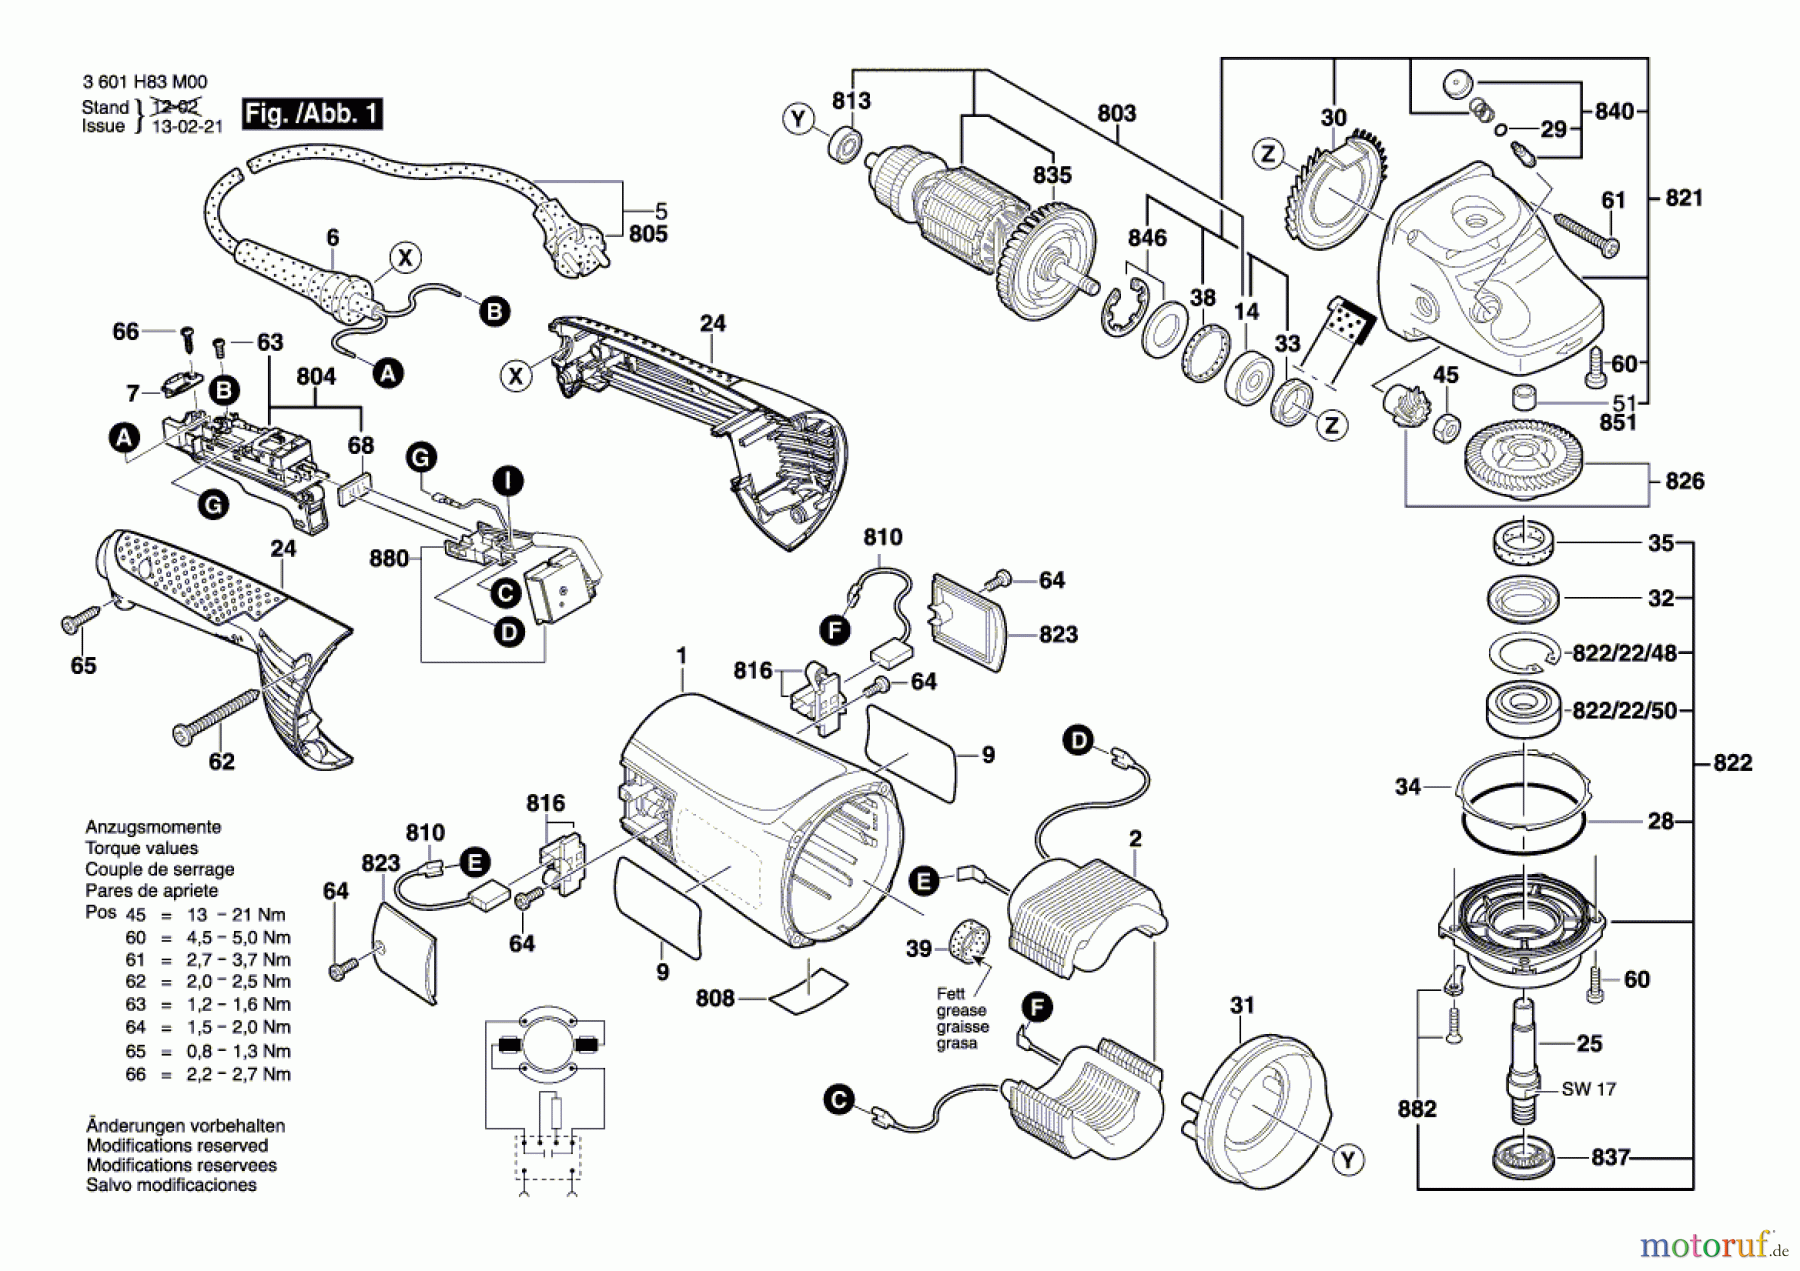  Bosch Werkzeug Winkelschleifer GWS 24-230 JH Seite 1